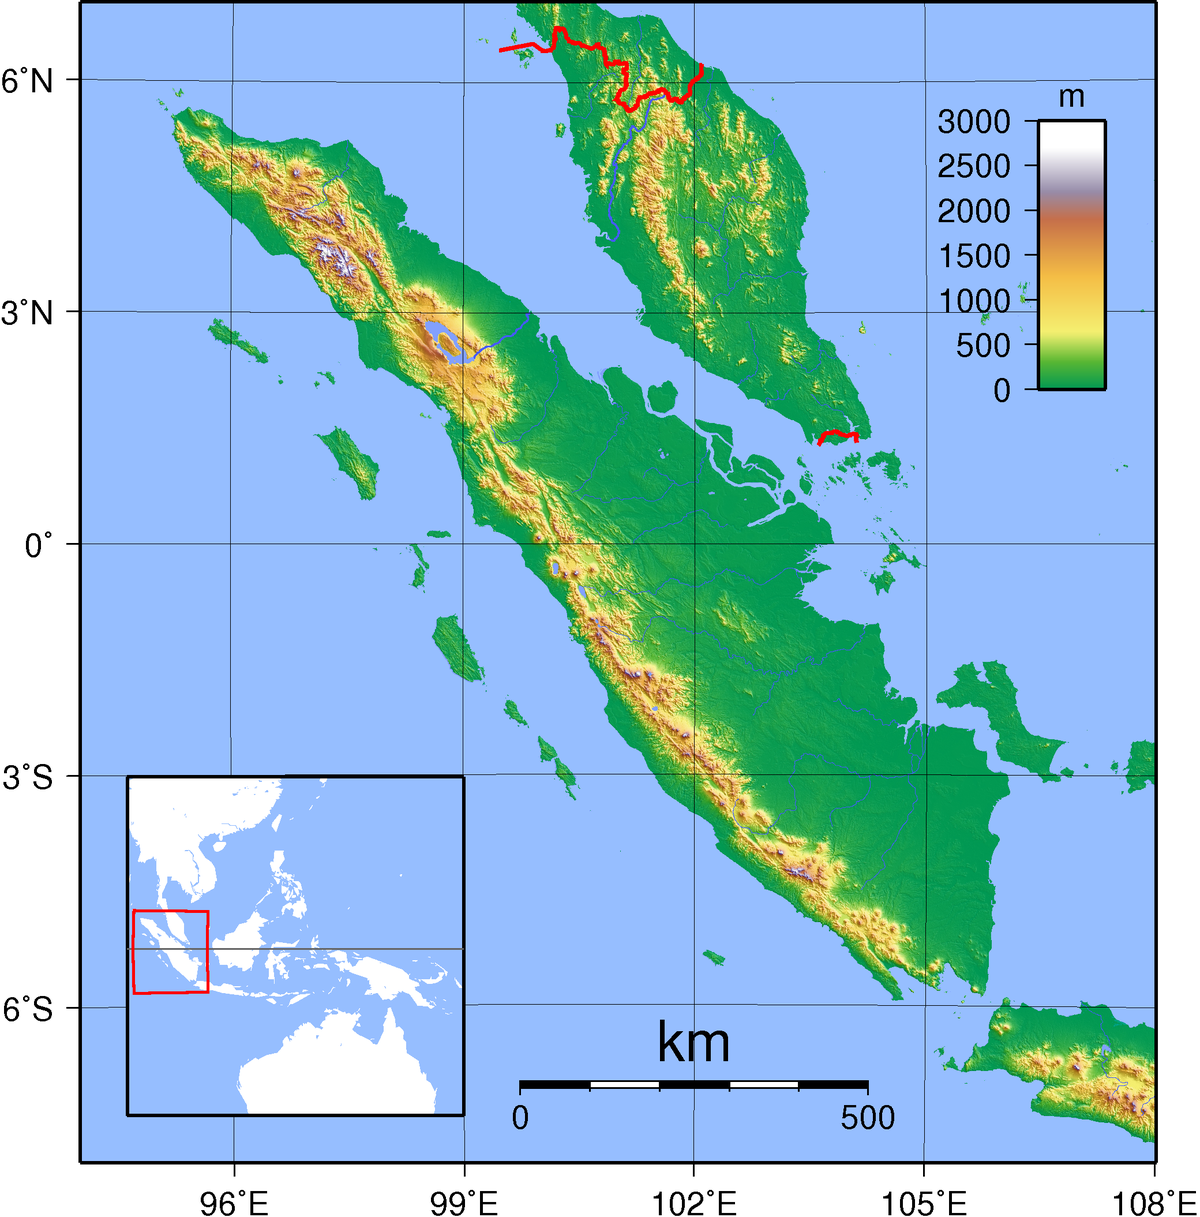 Deretan Provinsi Terkaya di Sumatera Berdasarkan PDRB, Kepulauan Riau Unggul Meski Baru Dimekarkan